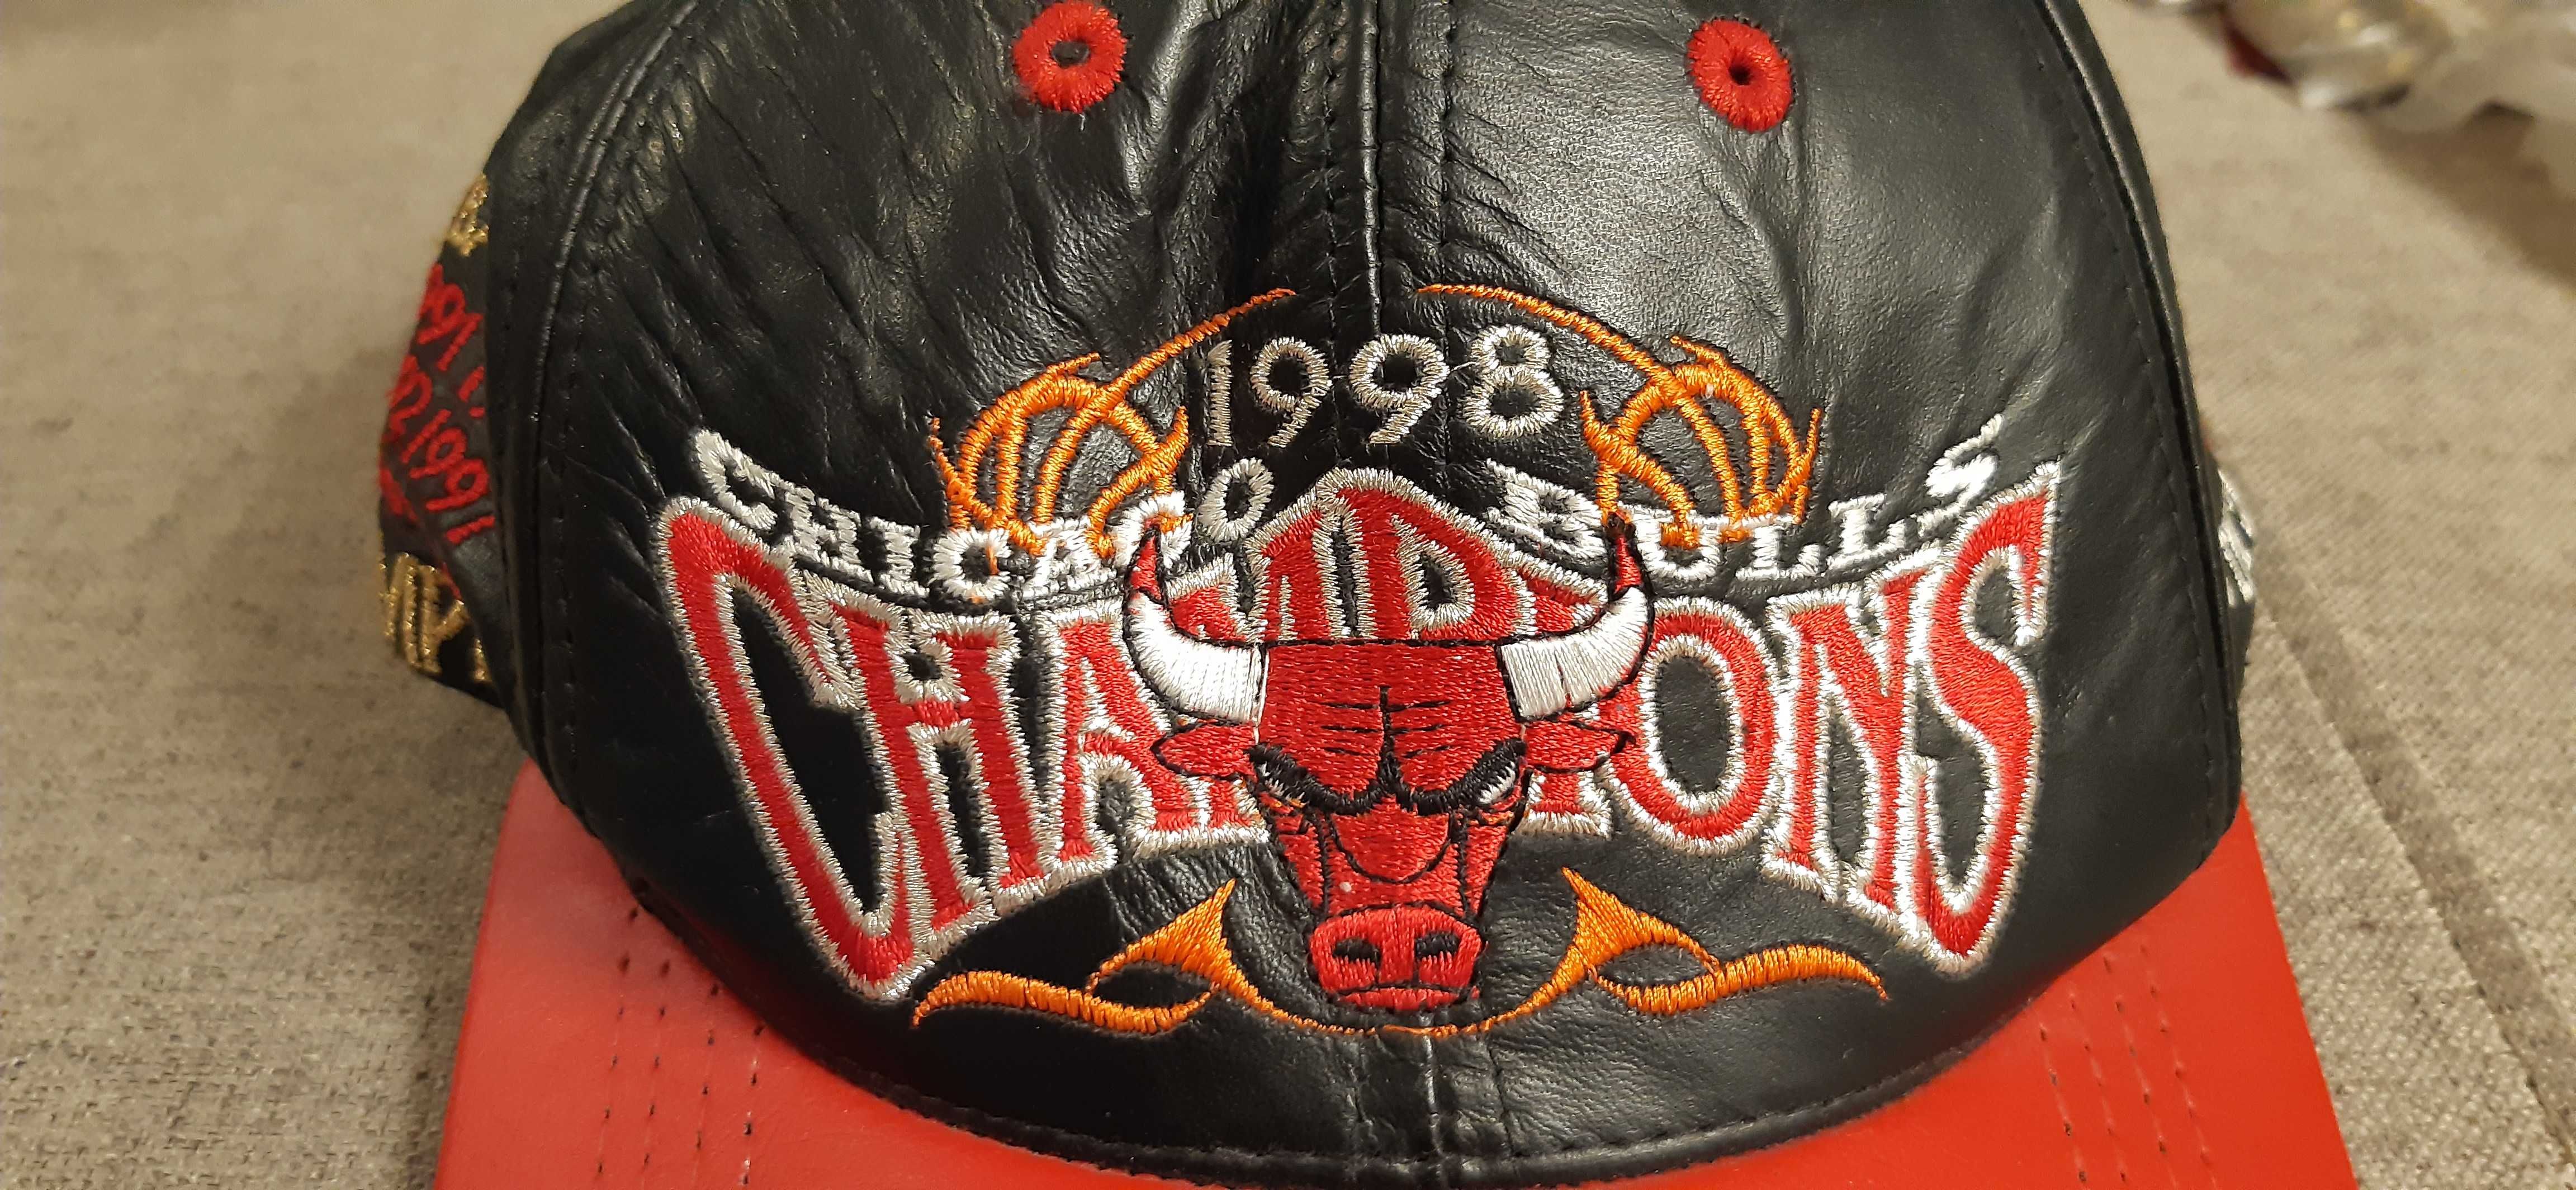 kolekcjonerska czapka chicago bulls 1998 champions dla kolekcjonerów